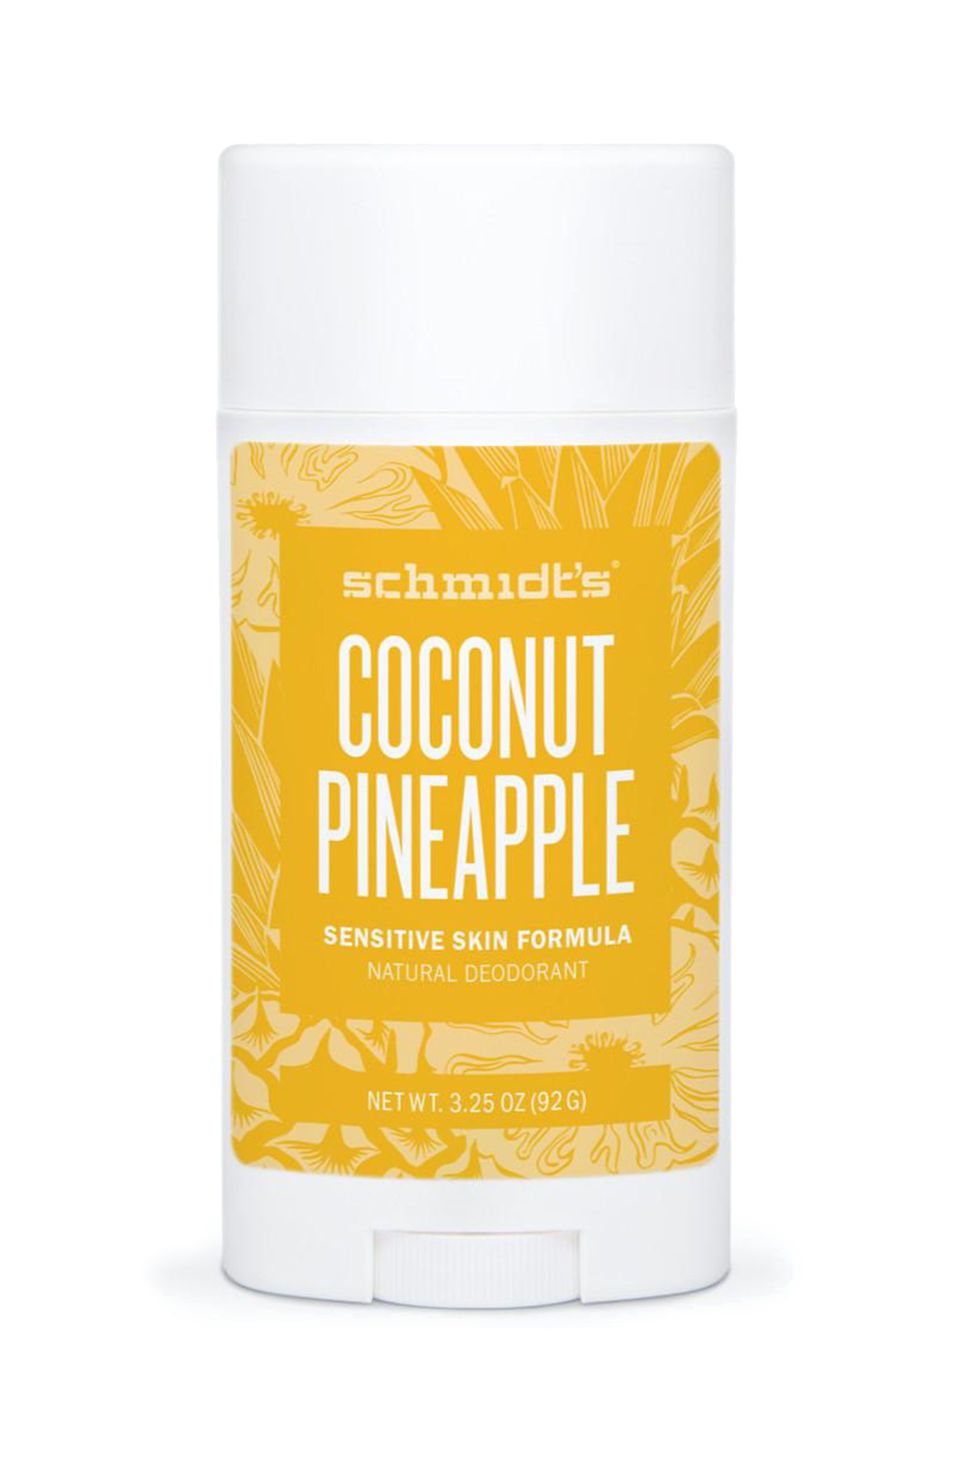 Schmidt's Natural Deodorant - Coconut Pineapple